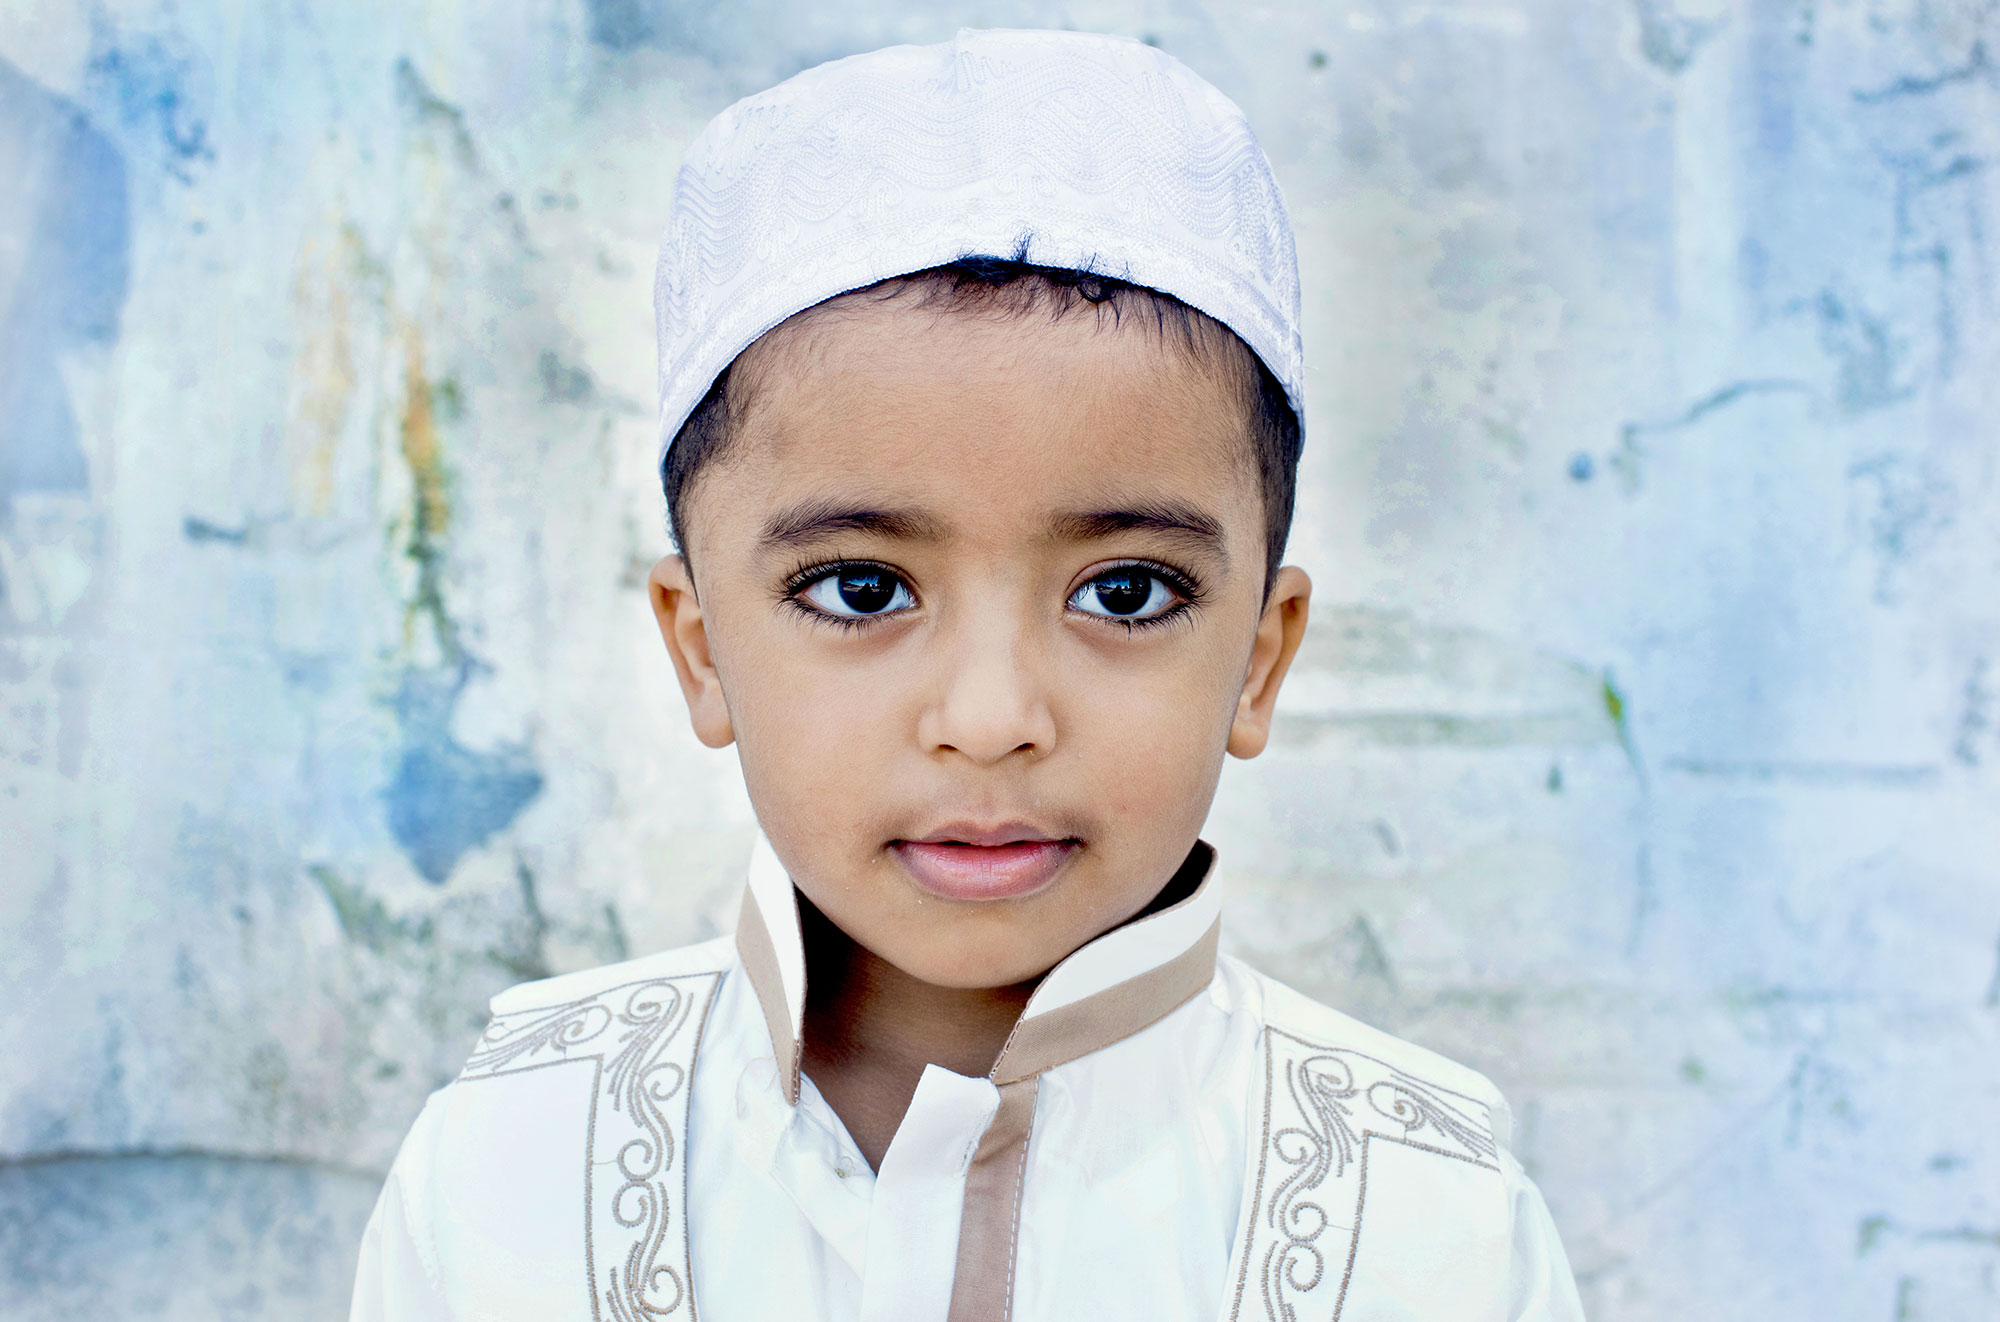 Porträtfotografie eines Jungen